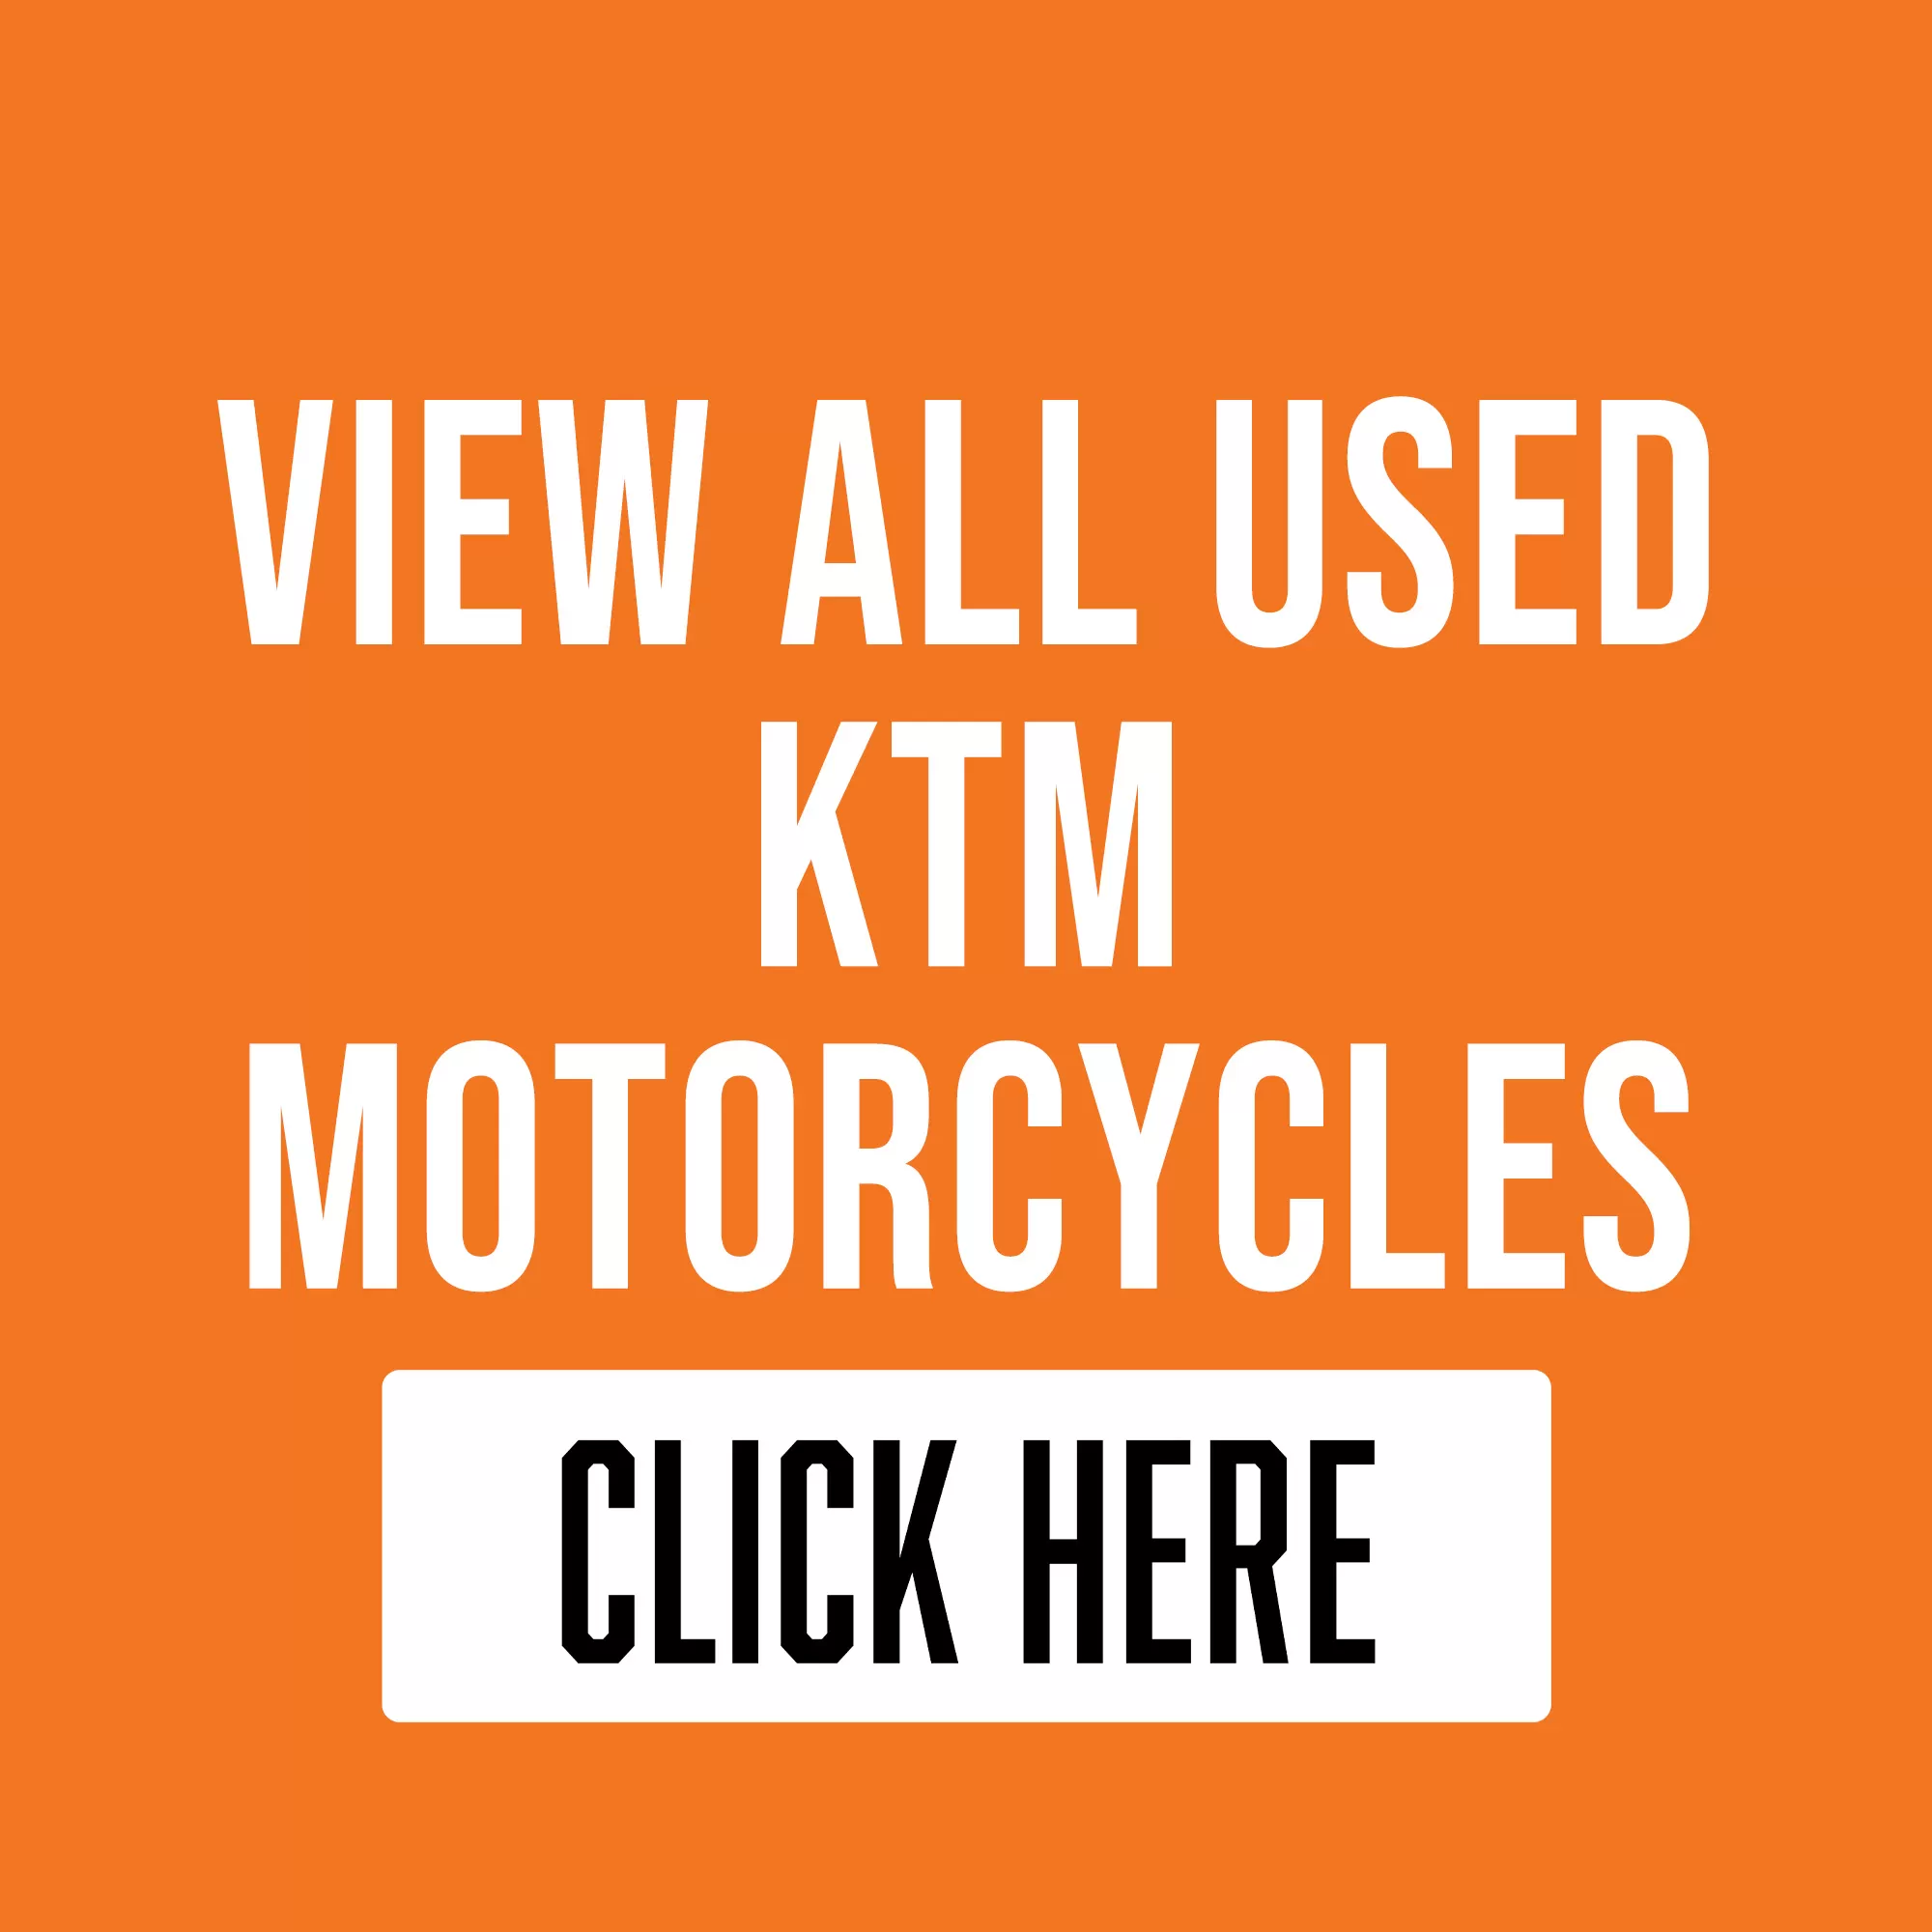 Used KTM motorcycles